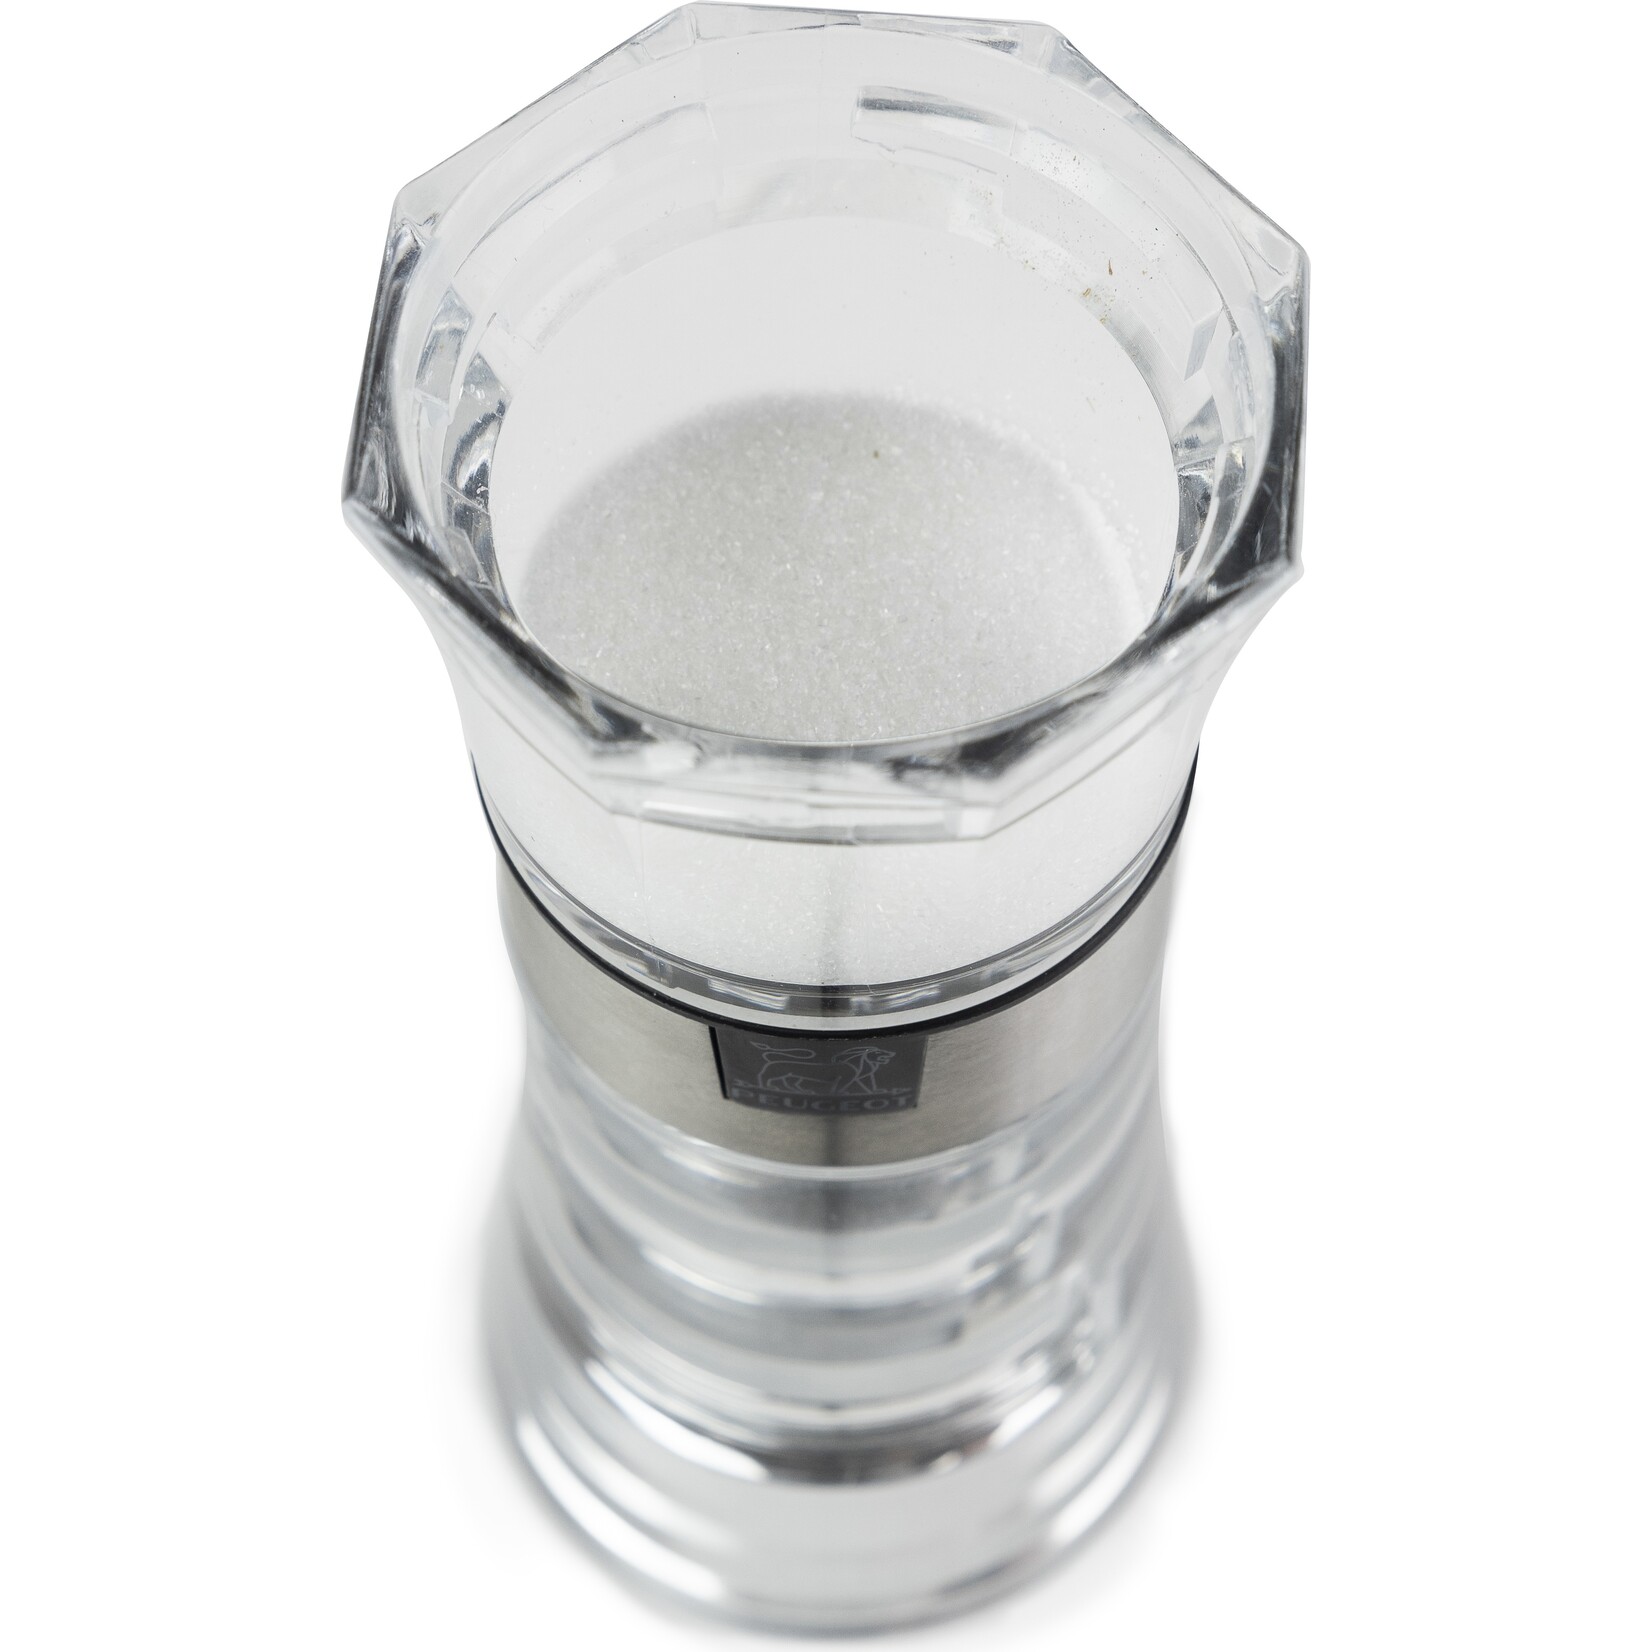 Peugeot Peugeot Oslo peper- en zoutmolen vochtig zout 14 cm, transparant, acryl